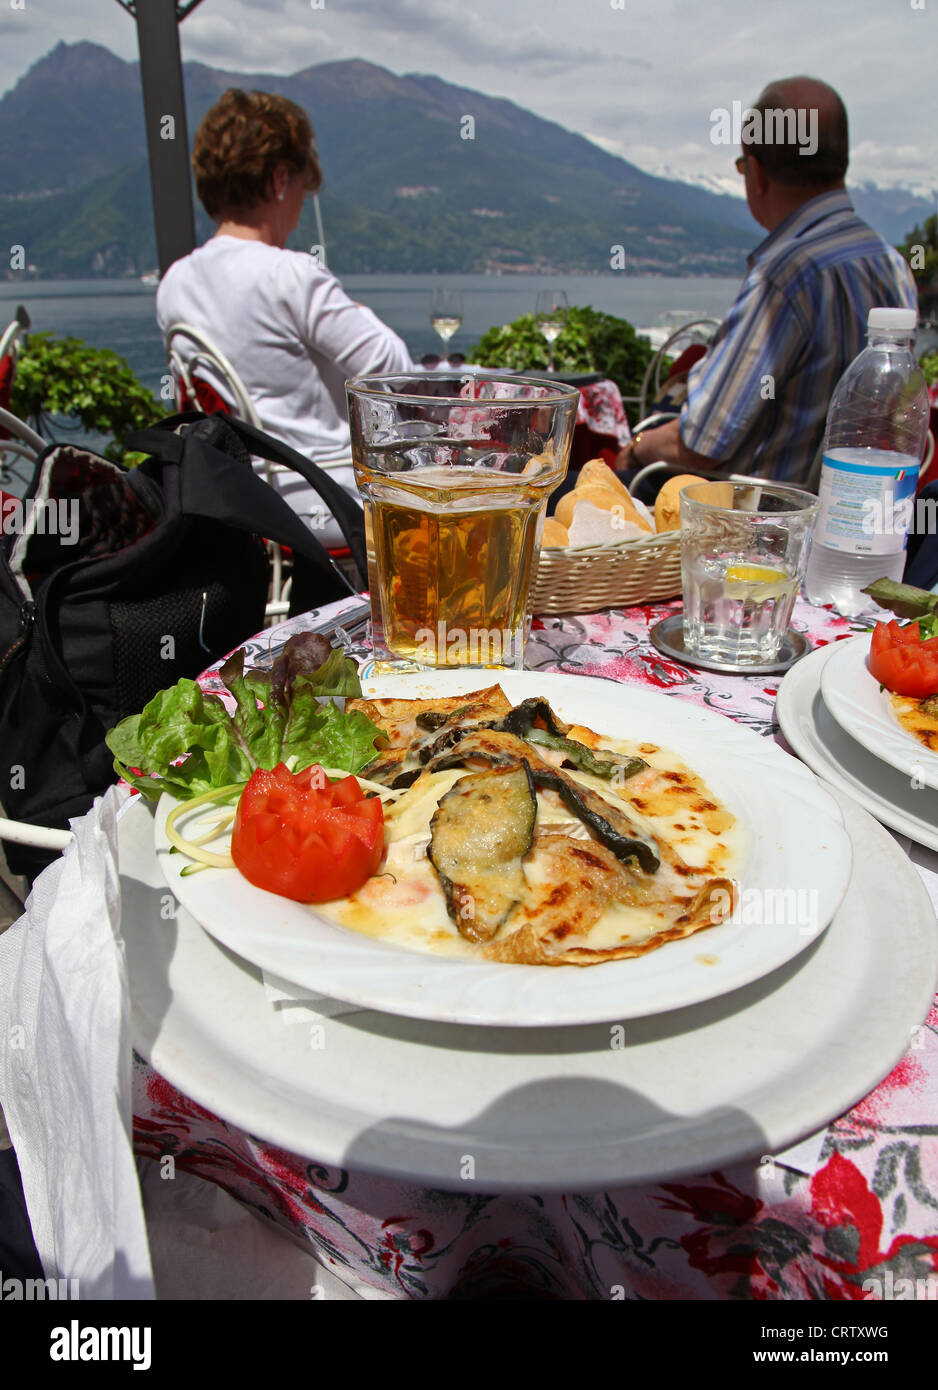 Les Épinards et crêpe aubergine sur une table à un restaurant ou un café en plein air donnant sur le lac de Côme Varenna Italie Banque D'Images